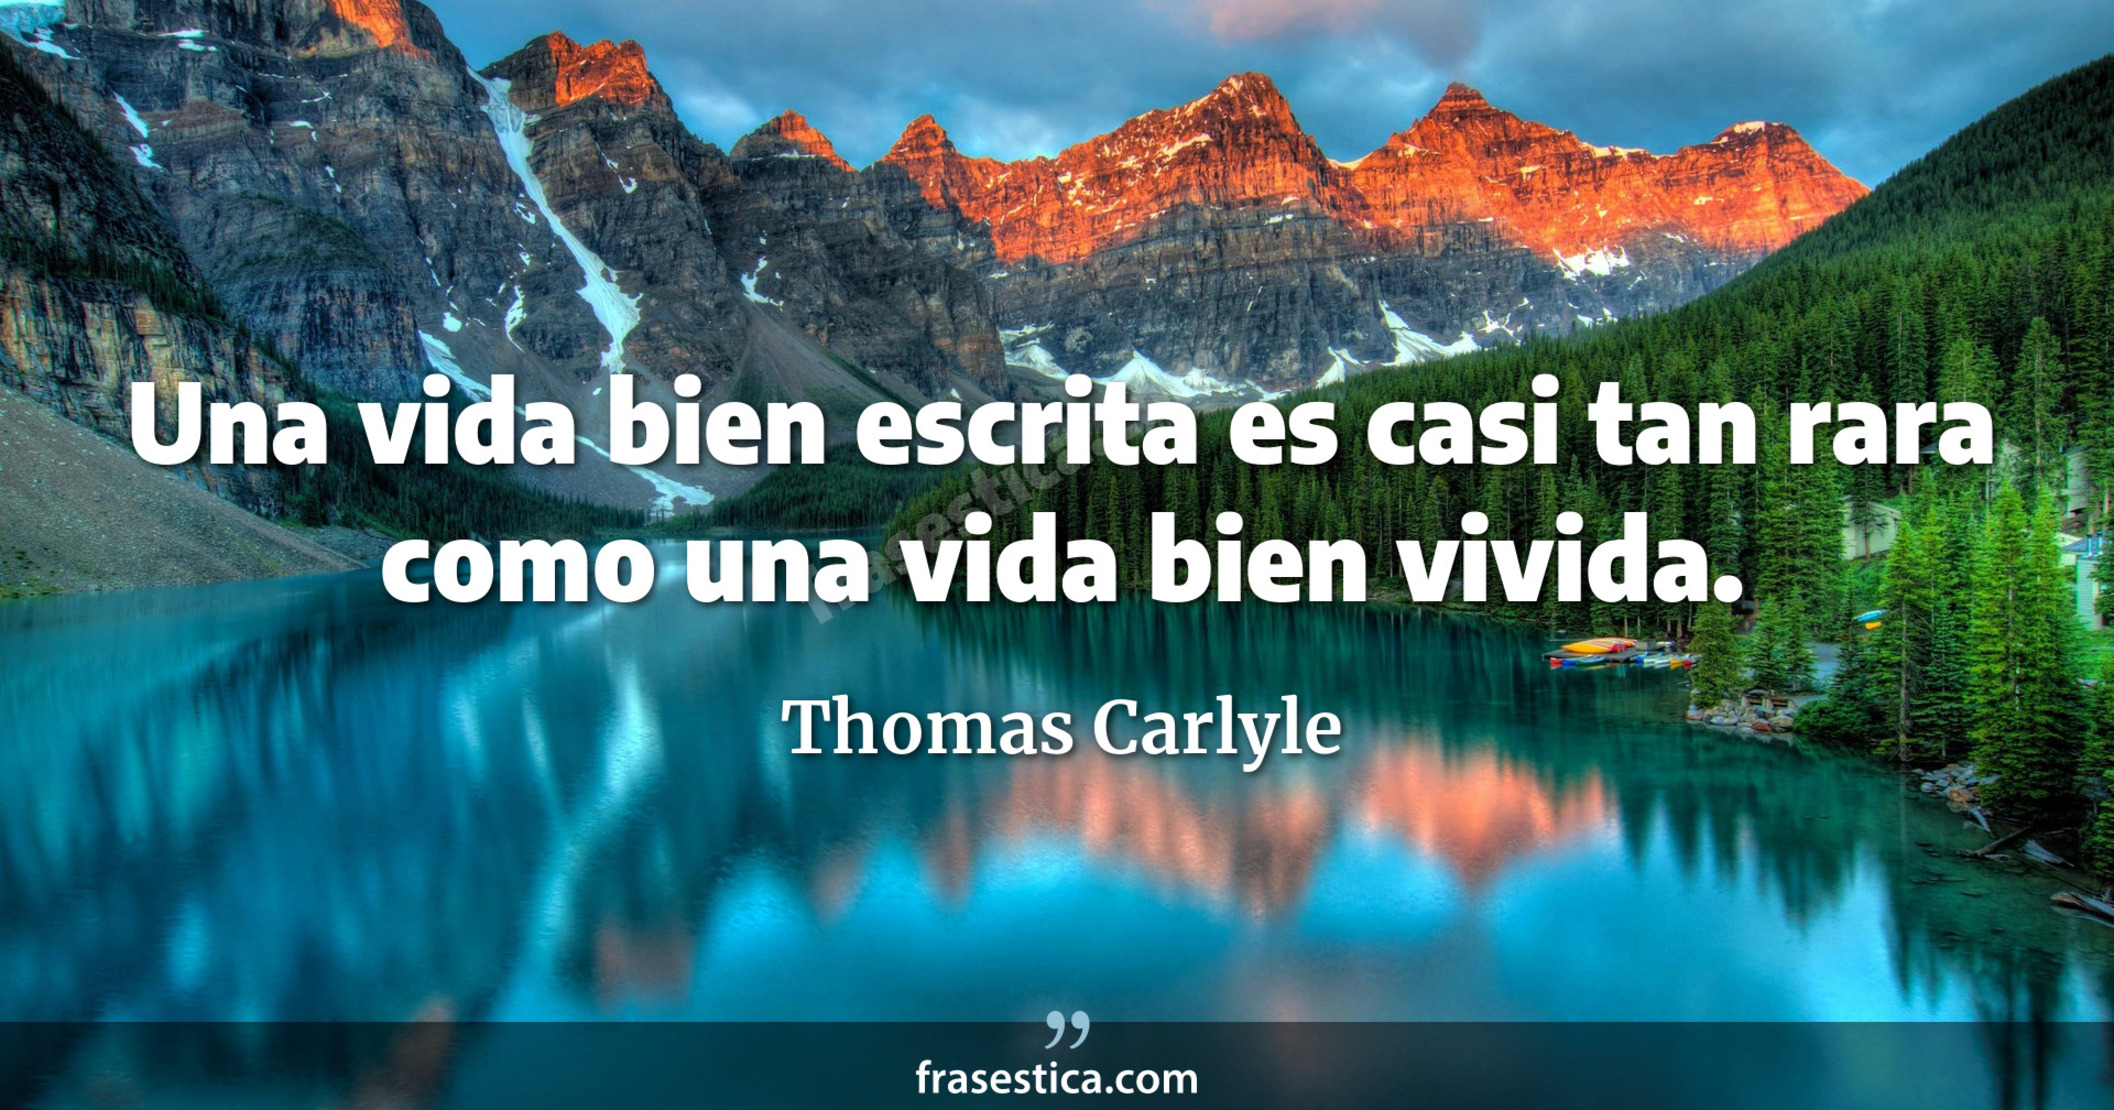 Una vida bien escrita es casi tan rara como una vida bien vivida. - Thomas Carlyle